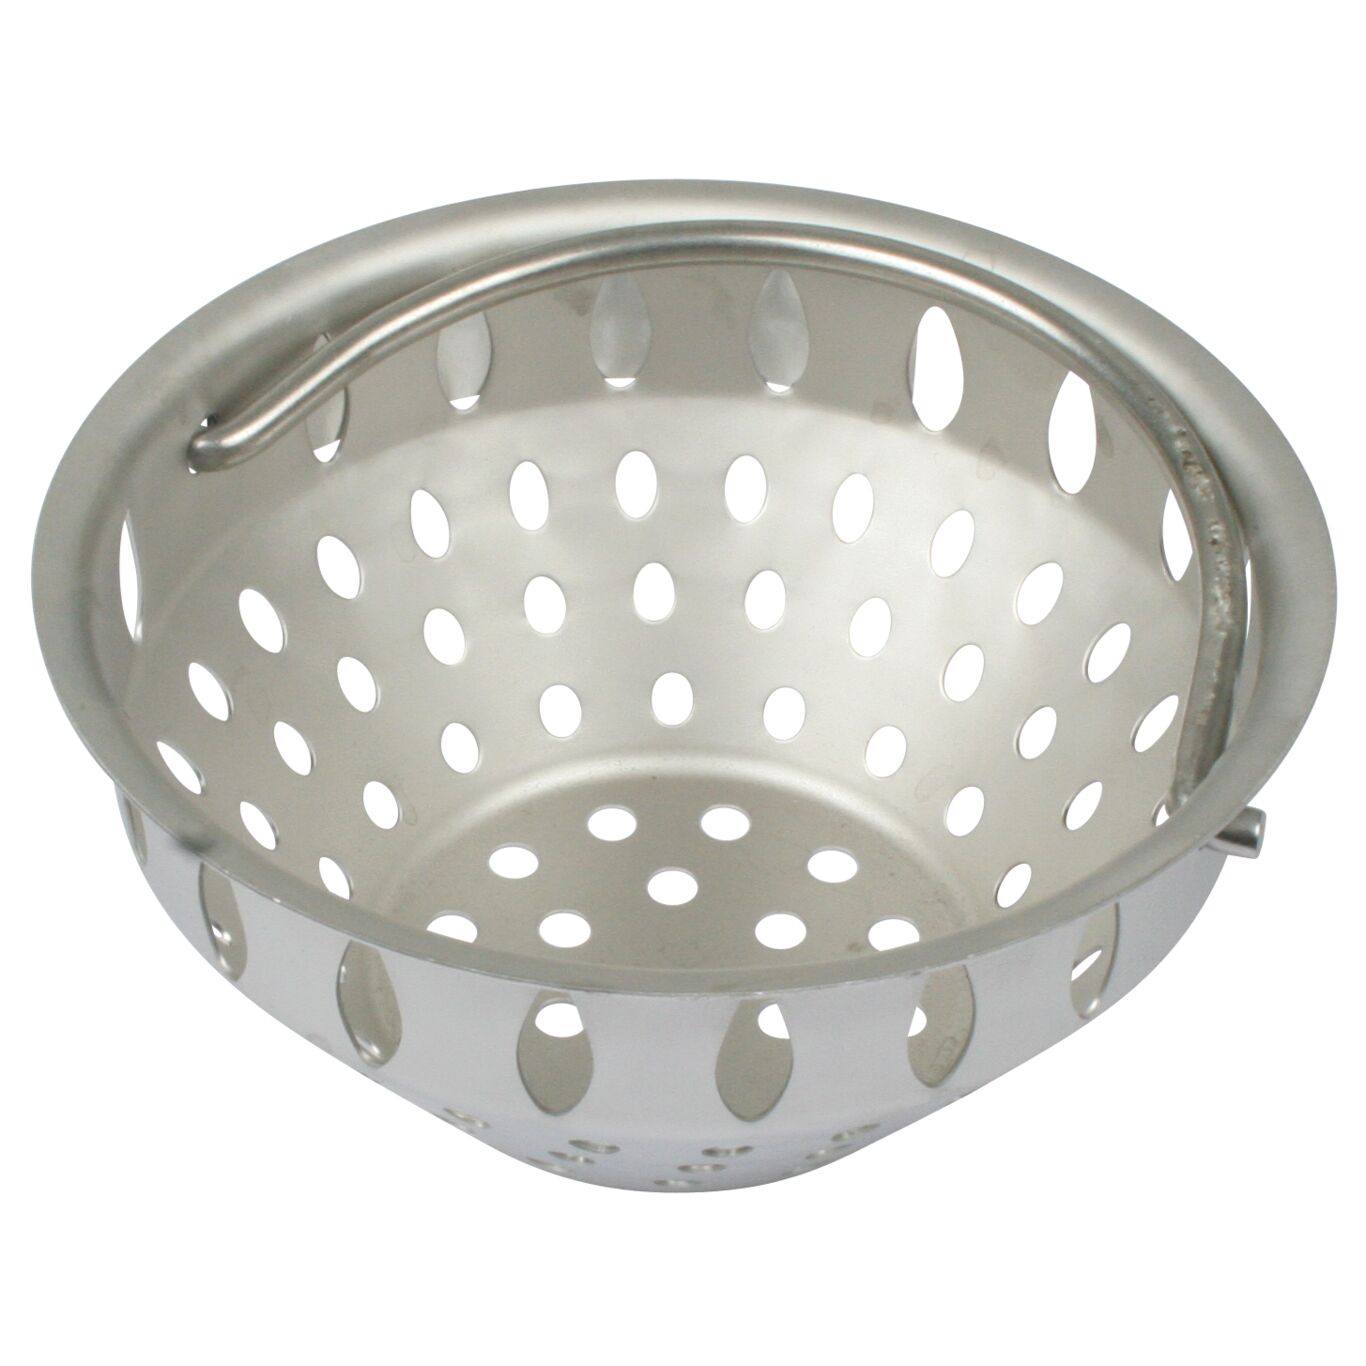 Product Image - Filter basket